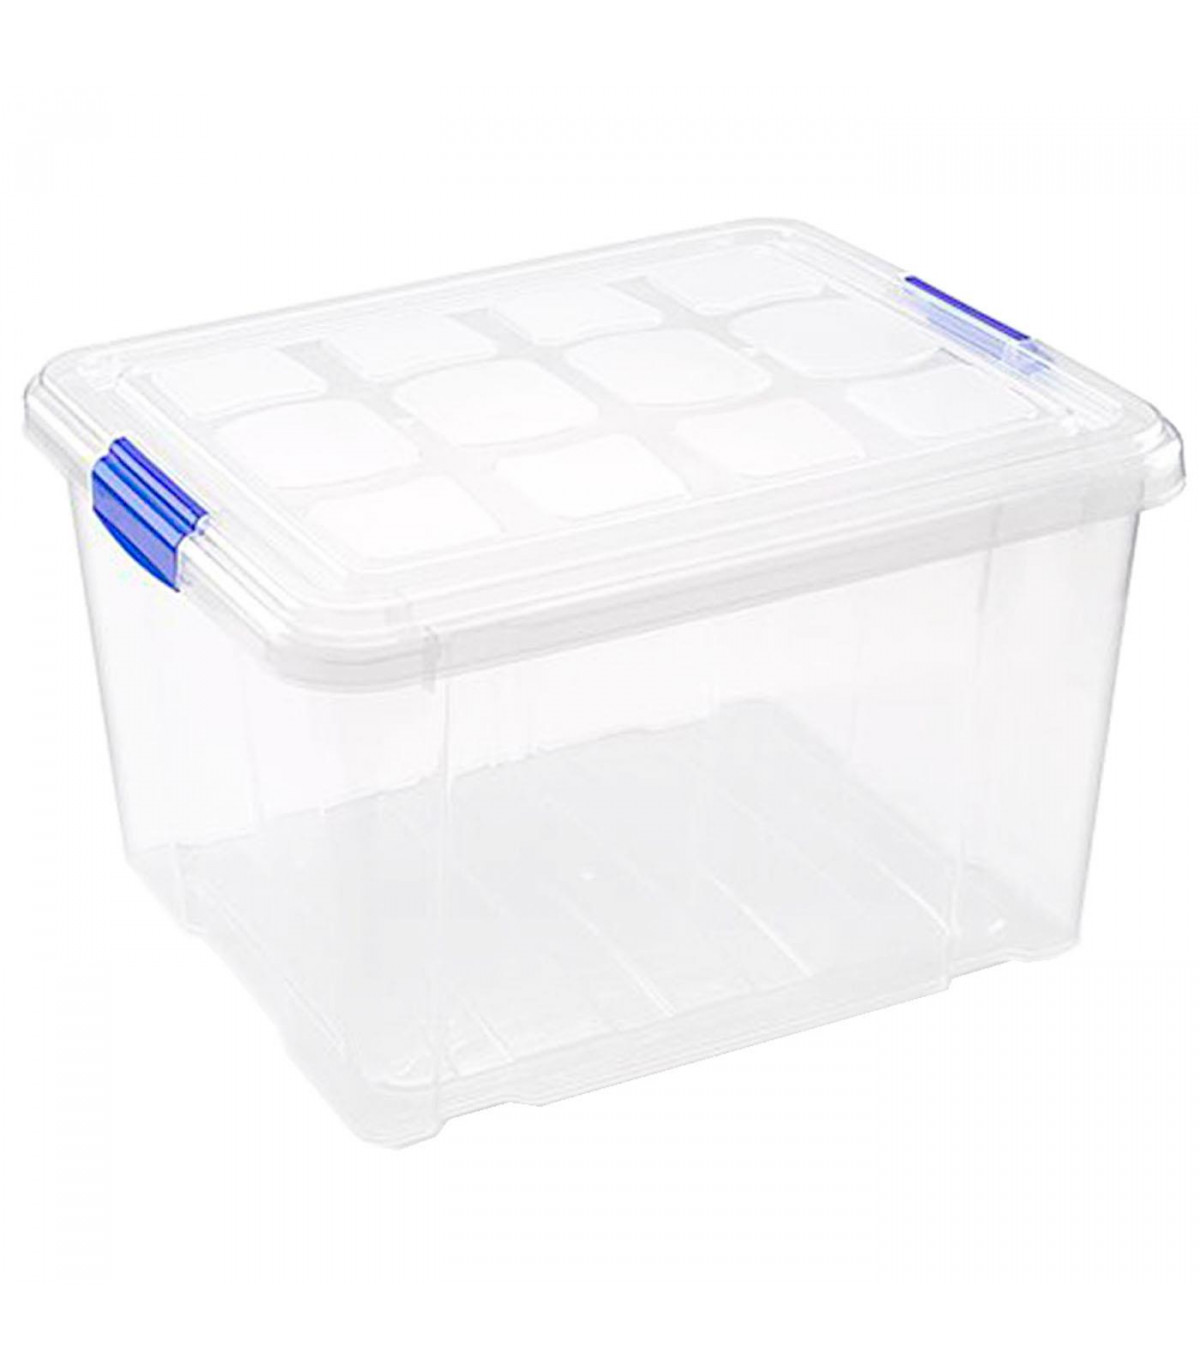 Tradineur - Caja de almacenaje plástico 25 litros. Cesta